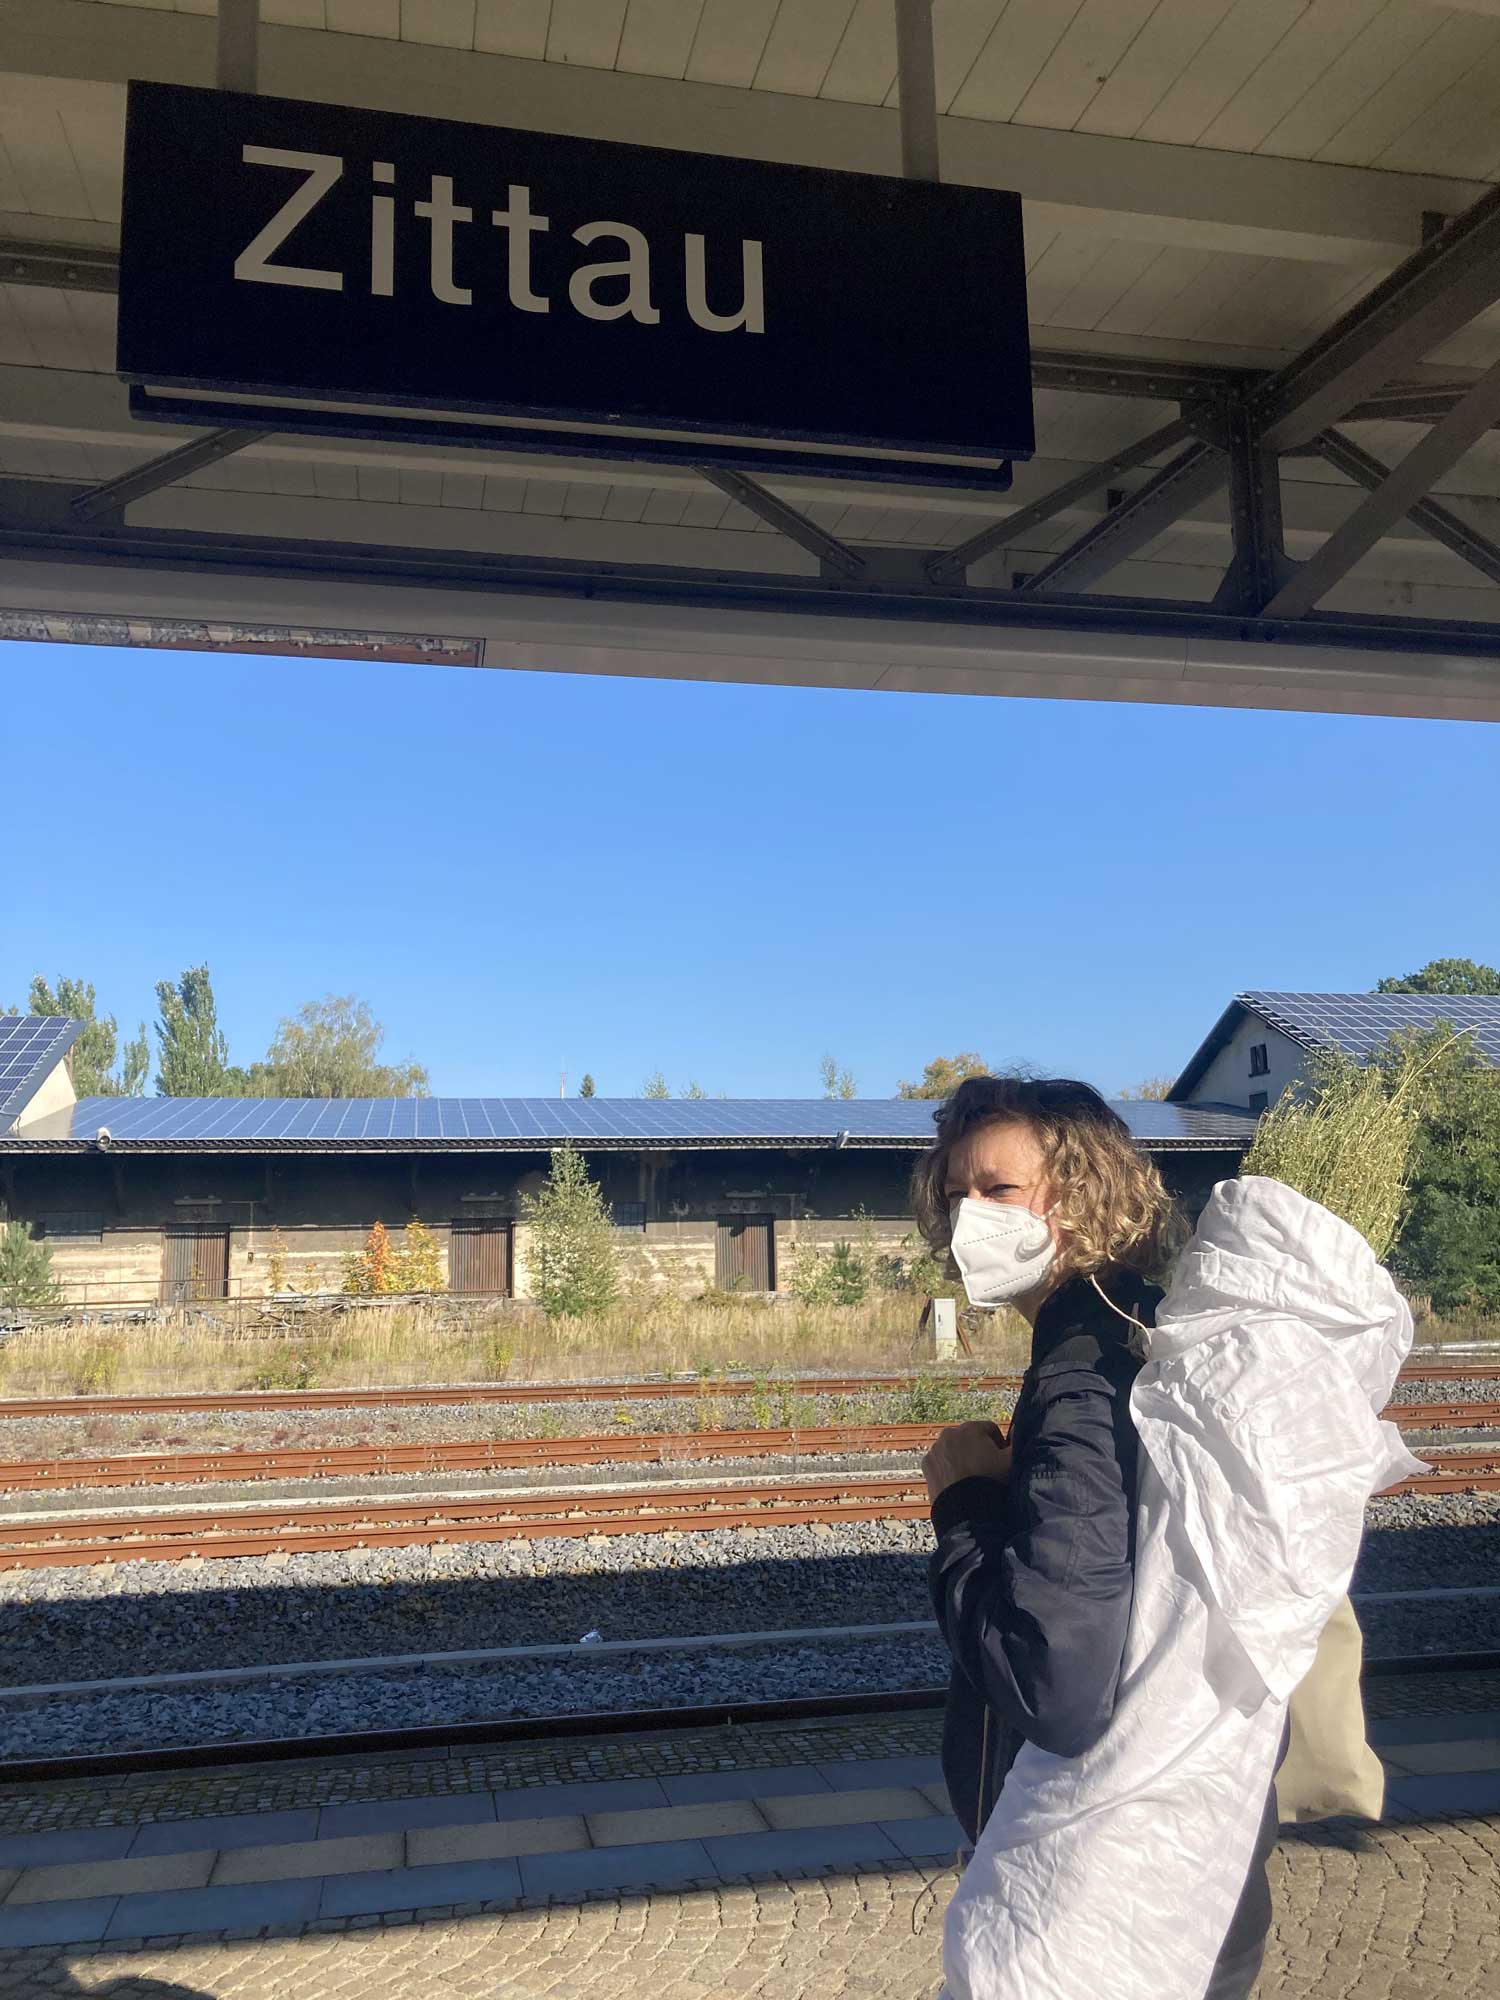 Ein Schild mit der Aufschrift Zittau am Bahnhof, darunter eine Frau mit Maske und einem Bündel auf dem Rücken